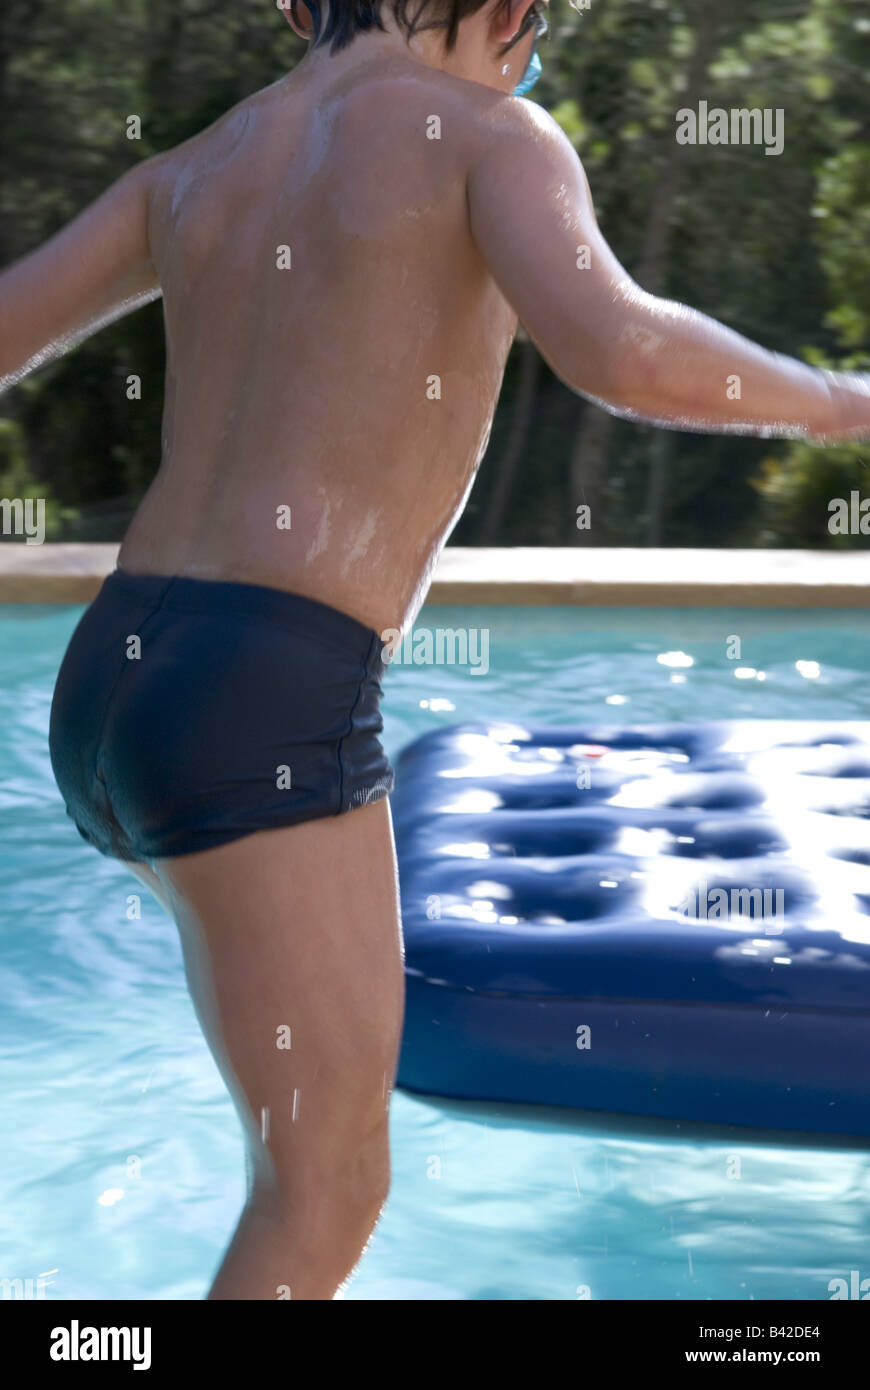 Détail de l'arrière du jeune garçon sur le point de sauter dans une piscine sur lilo en attente Banque D'Images